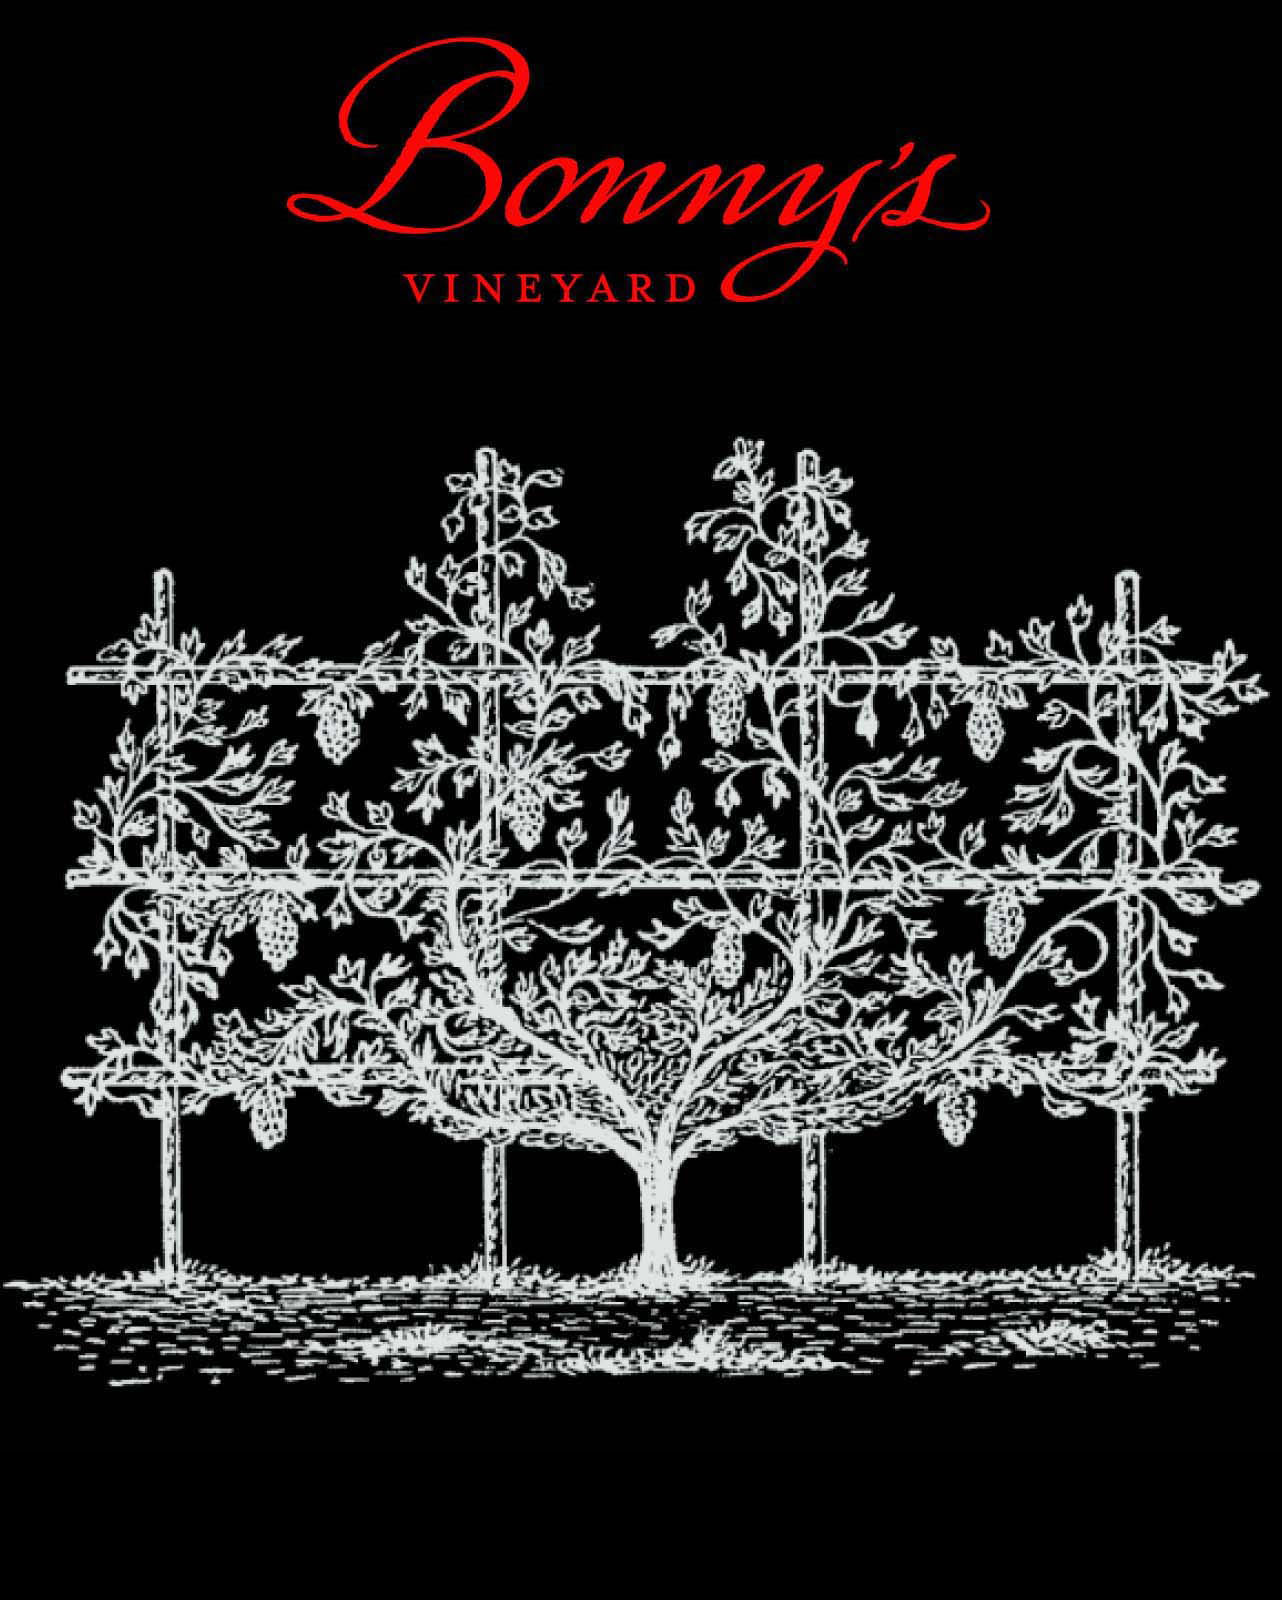 Product Image for 2017 Bonny's Vineyard Cabernet